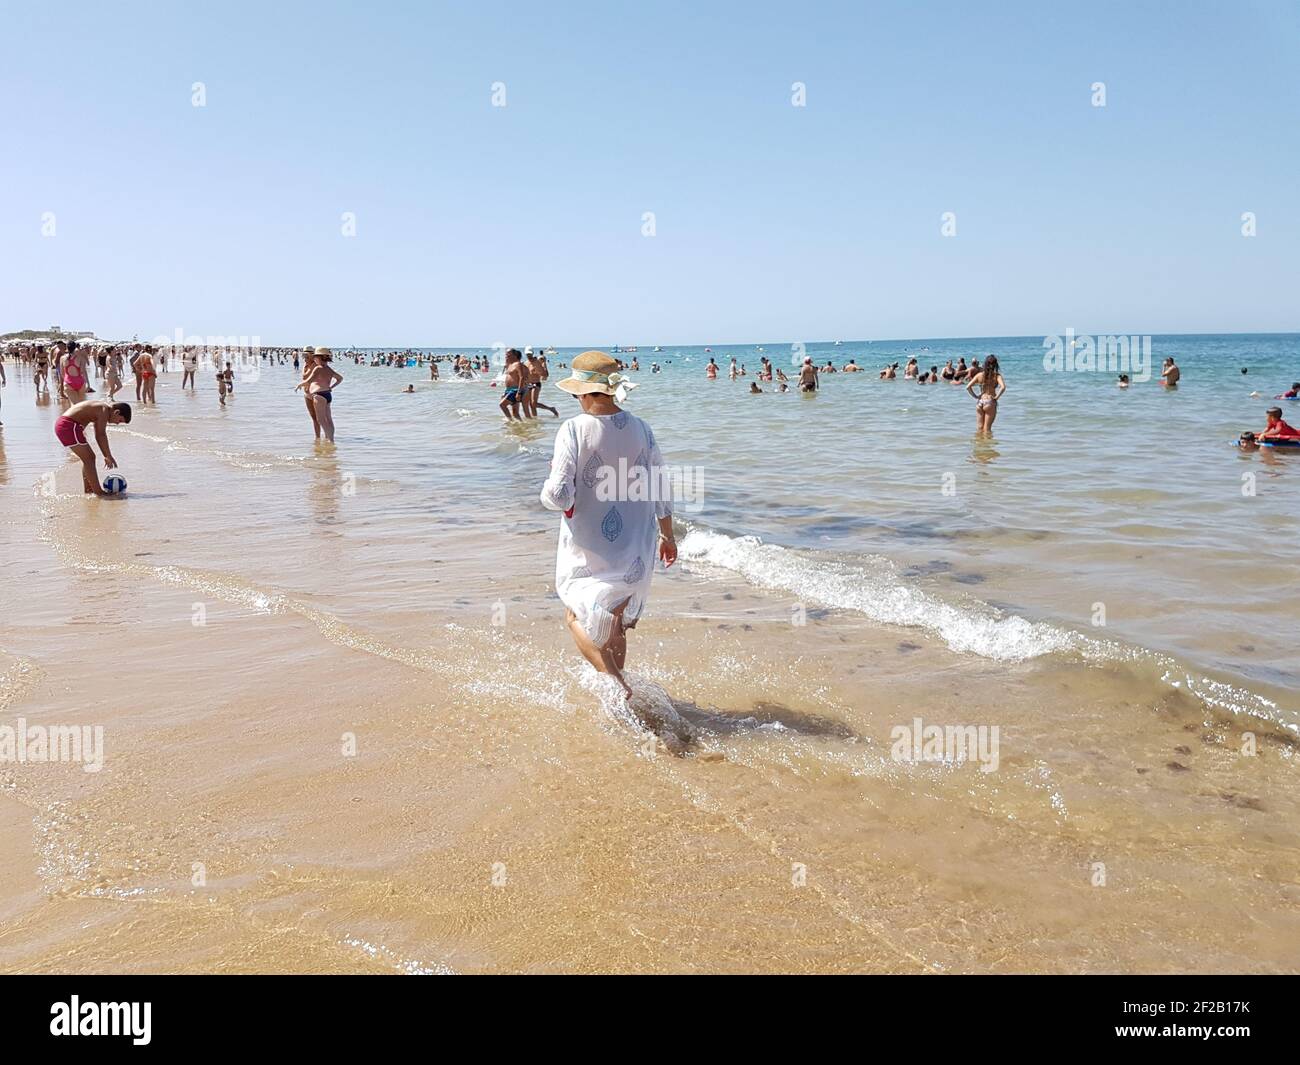 CHIPIONA, SPANIEN - 13. Aug 2017: Frau, die im Sommer unter den Menschen am Strand läuft Stockfoto